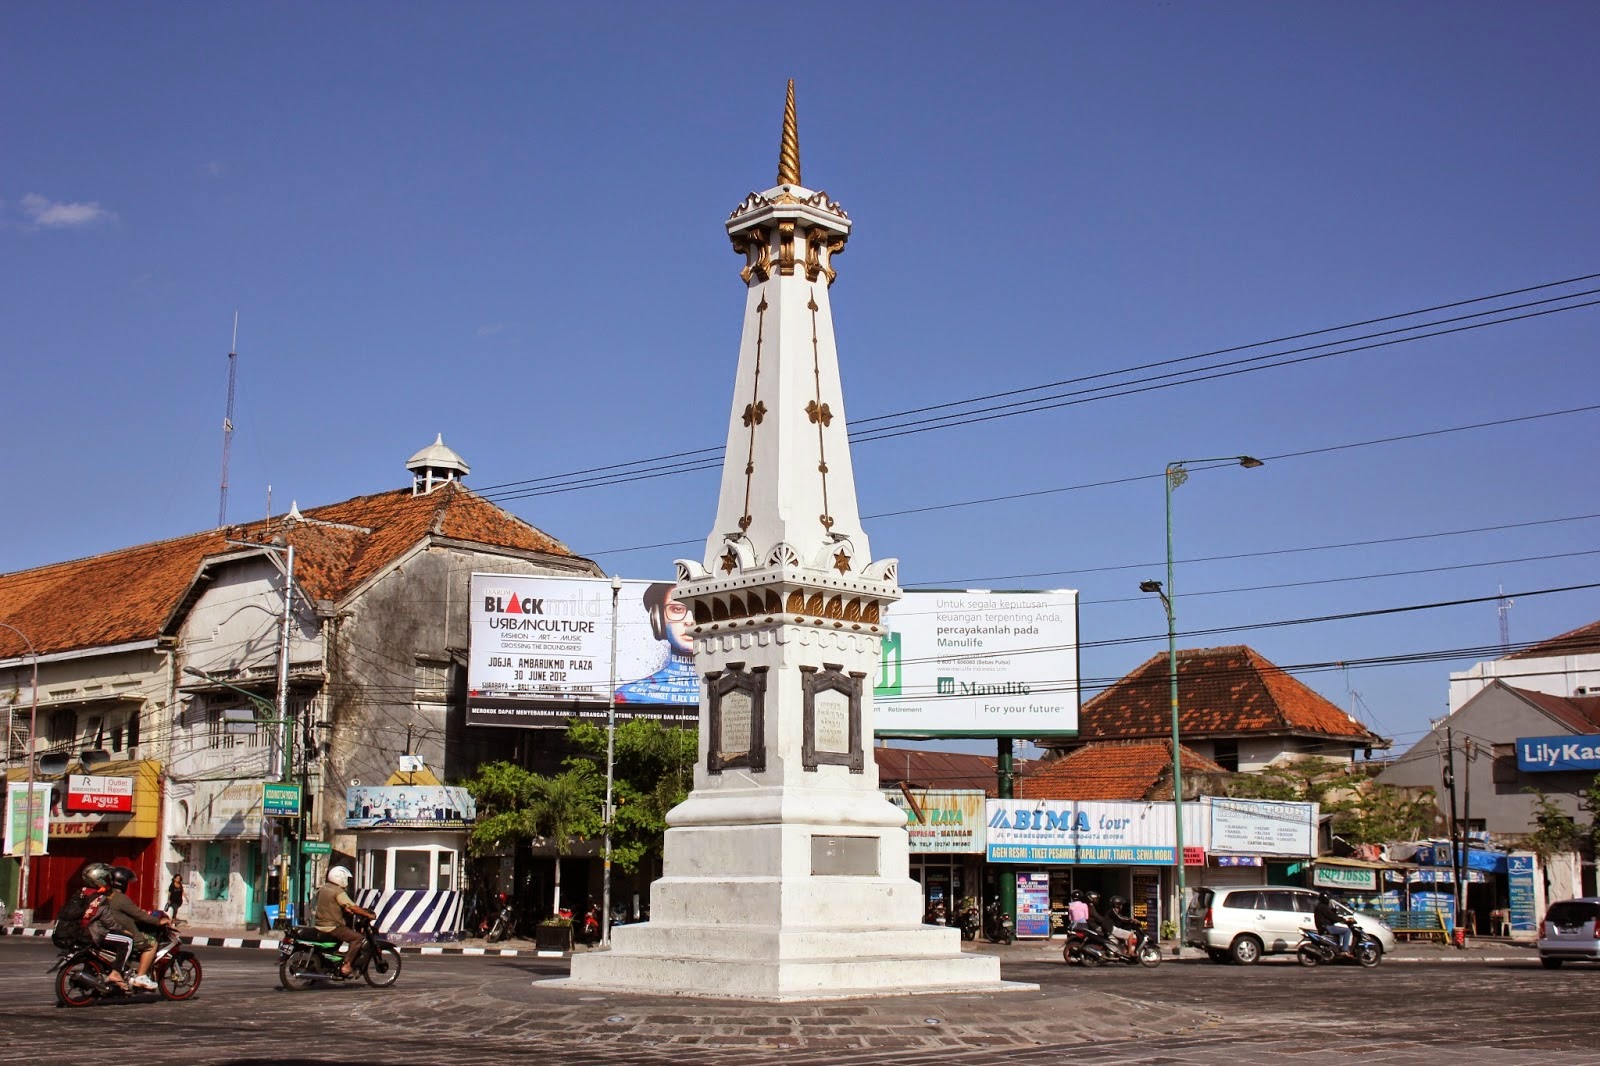 Wisata Landmark Dunia, Merapi Park Jogjakarta - Berdesa